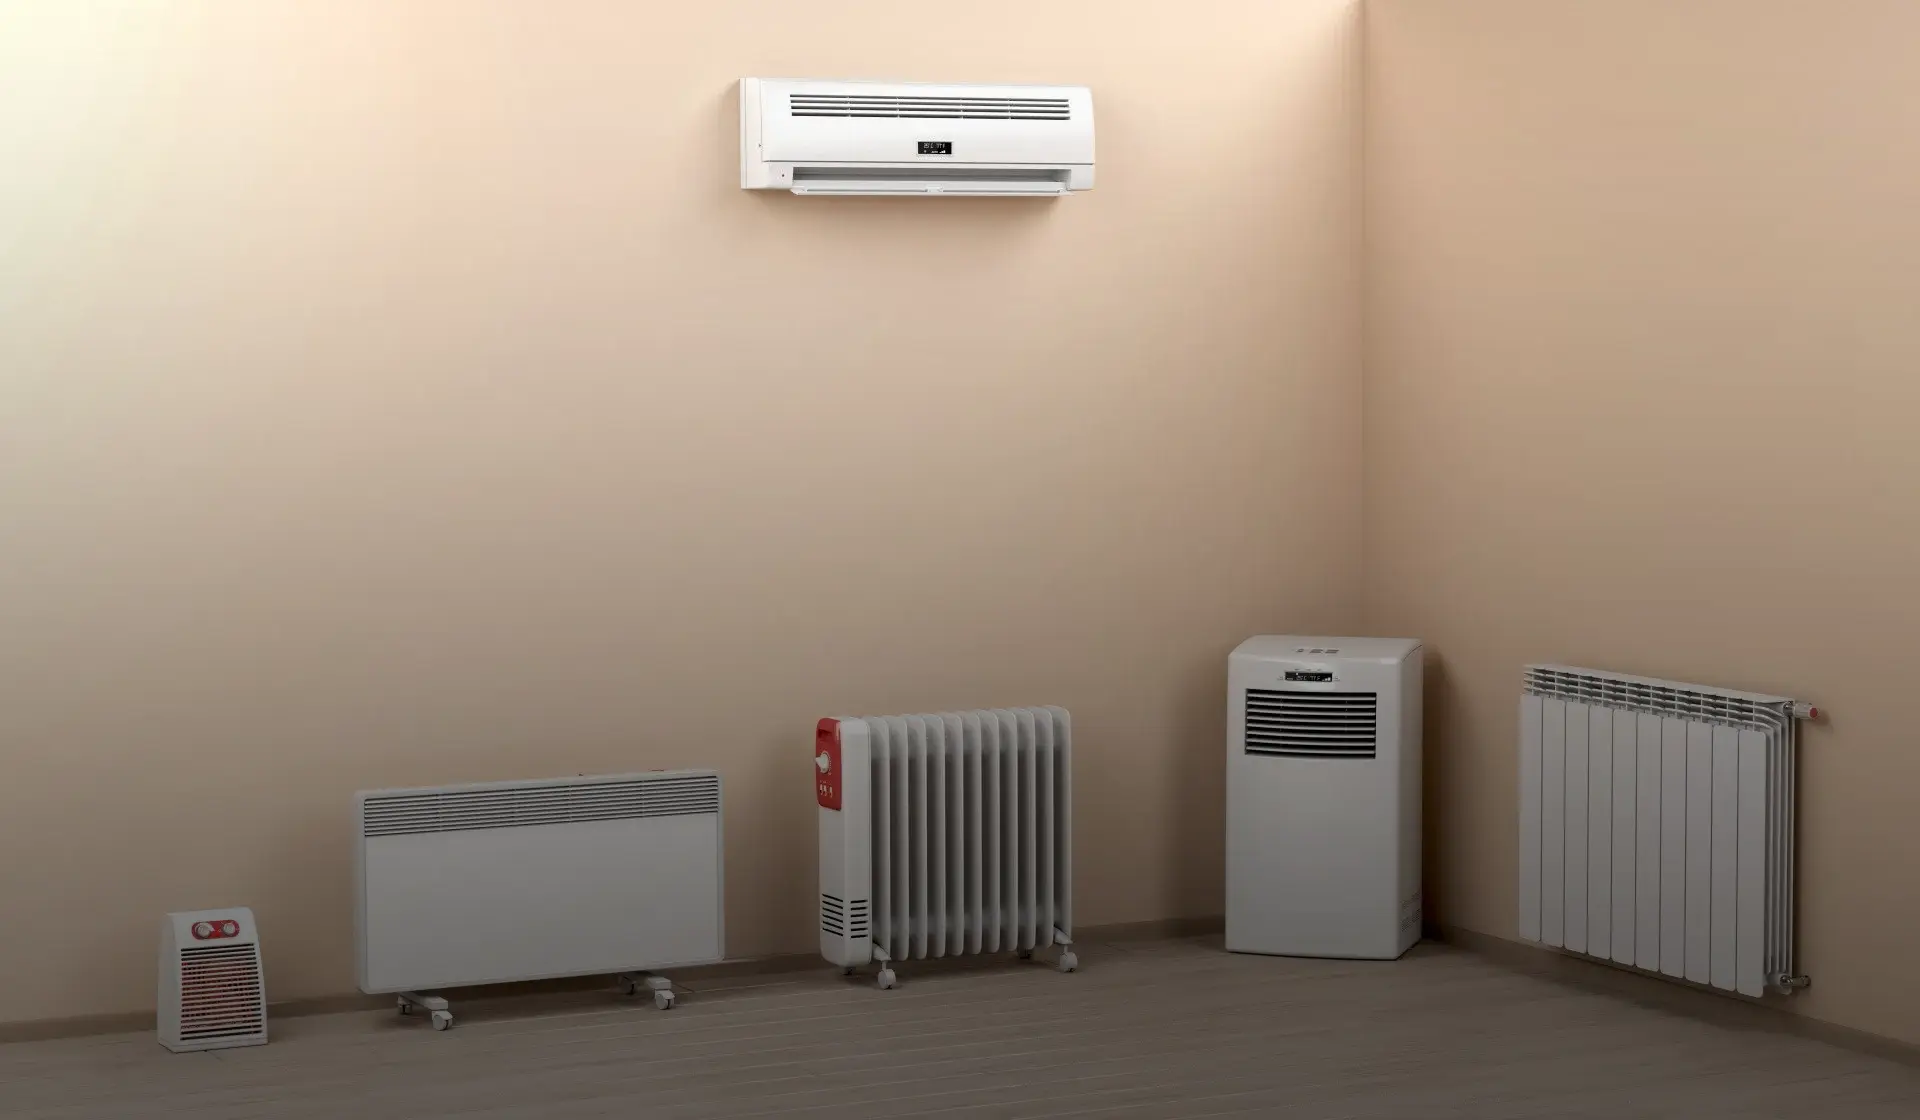 calentador de pantalla - Cómo se usa un calefactor eléctrico